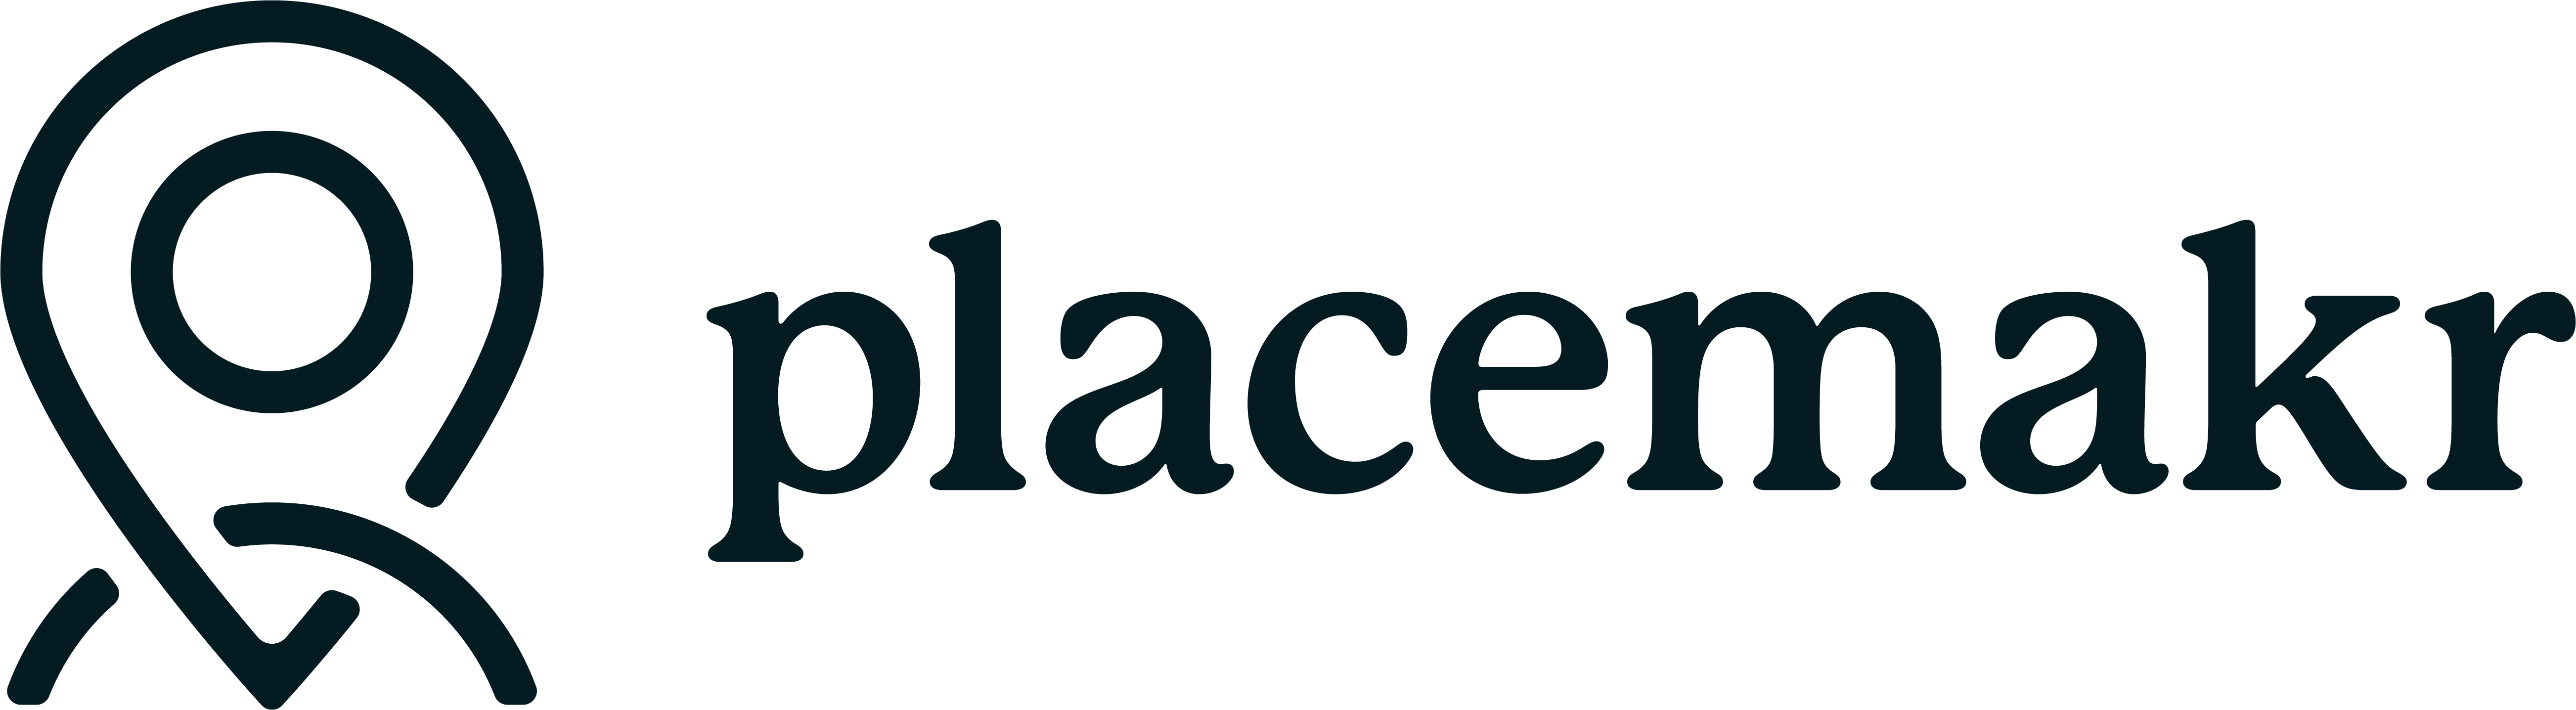 Placemakr logo